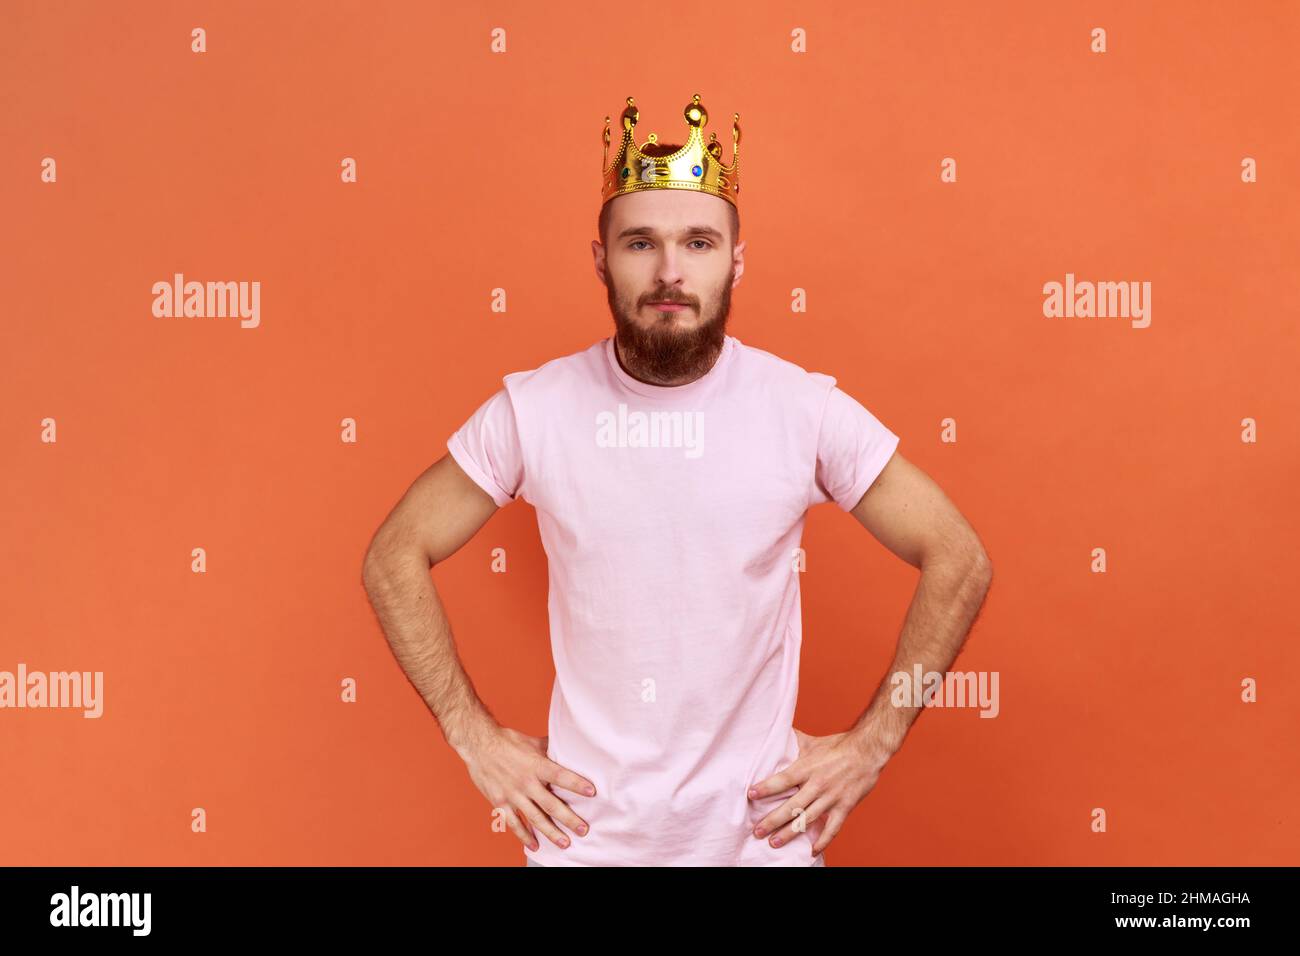 Ritratto di uomo bearded egoisticamente guardando la macchina fotografica, posando con la corona sulla testa, fingendo di essere re, stato privilegiato, indossando la T-shirt rosa. Studio interno girato isolato su sfondo arancione. Foto Stock